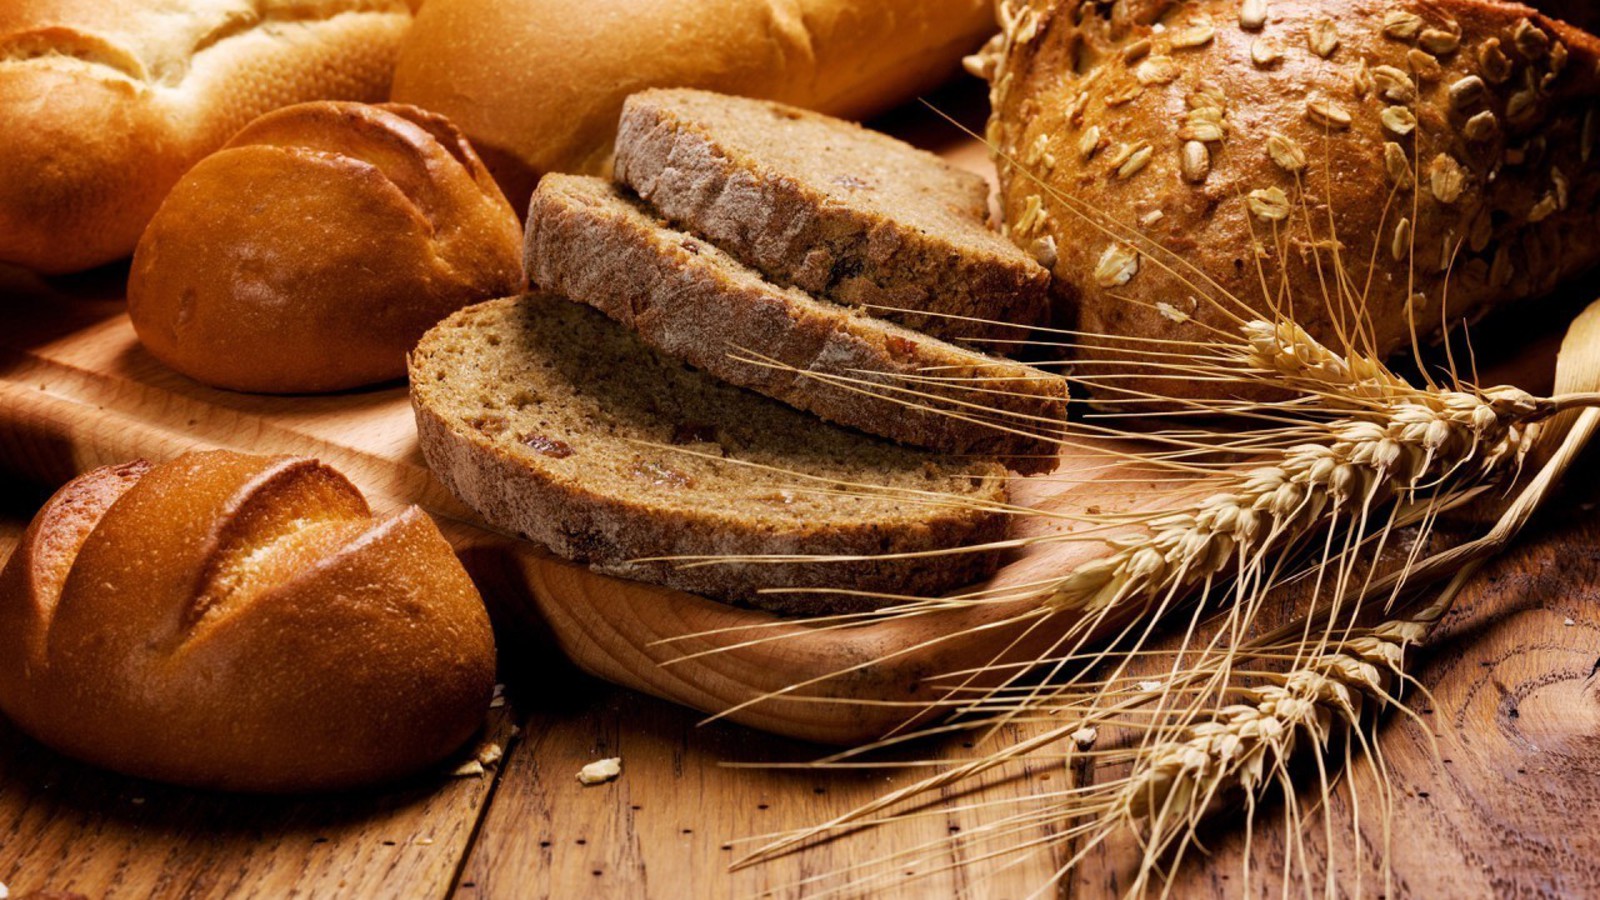 написано, можно ли есть ржаной хлеб при похудении помощь 